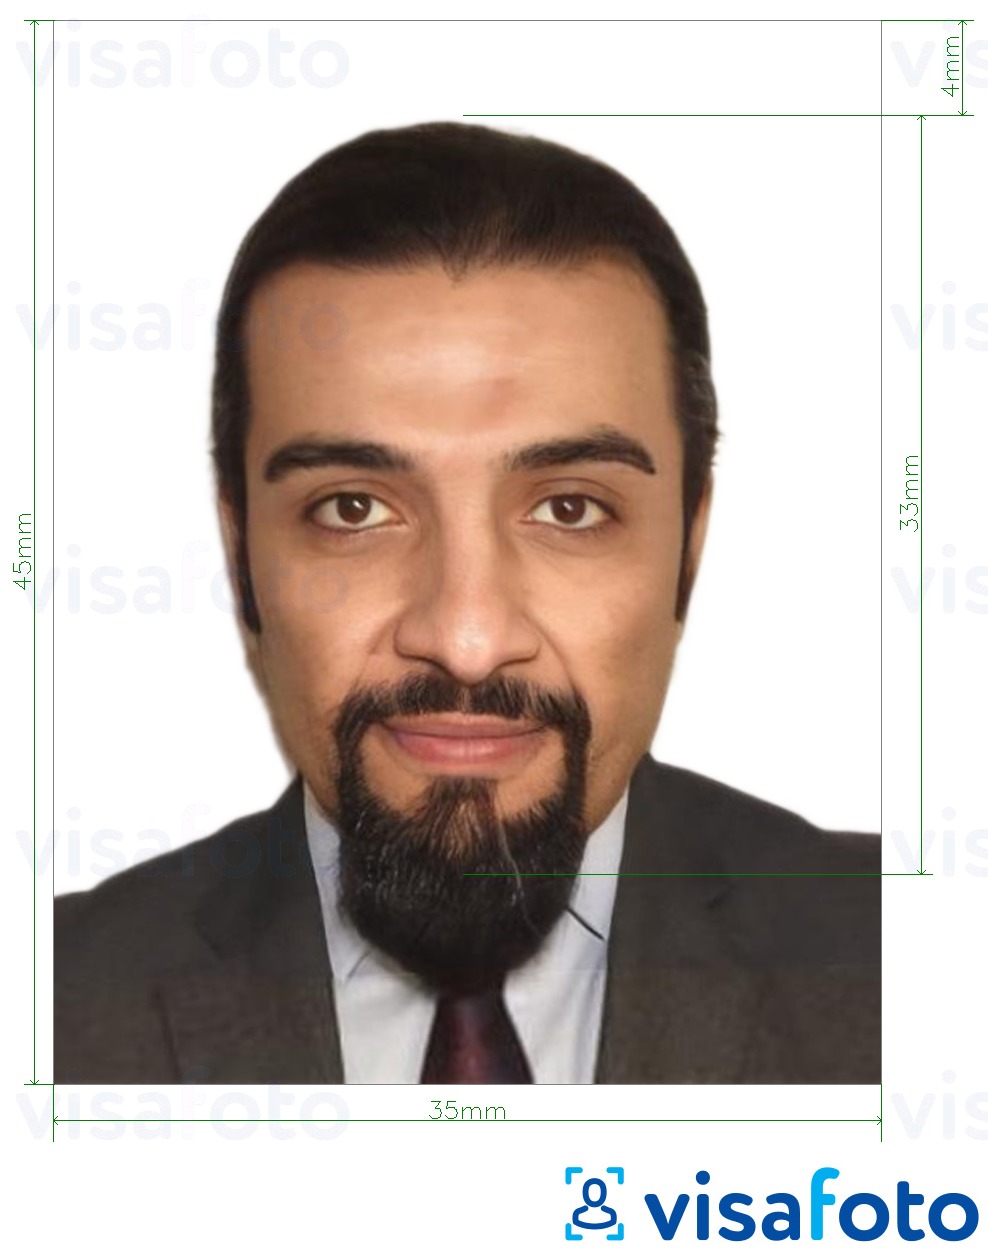 Primjer fotografije za Tuniska viza 3,5x4,5 cm (35x45 mm) s točno određenom veličinom